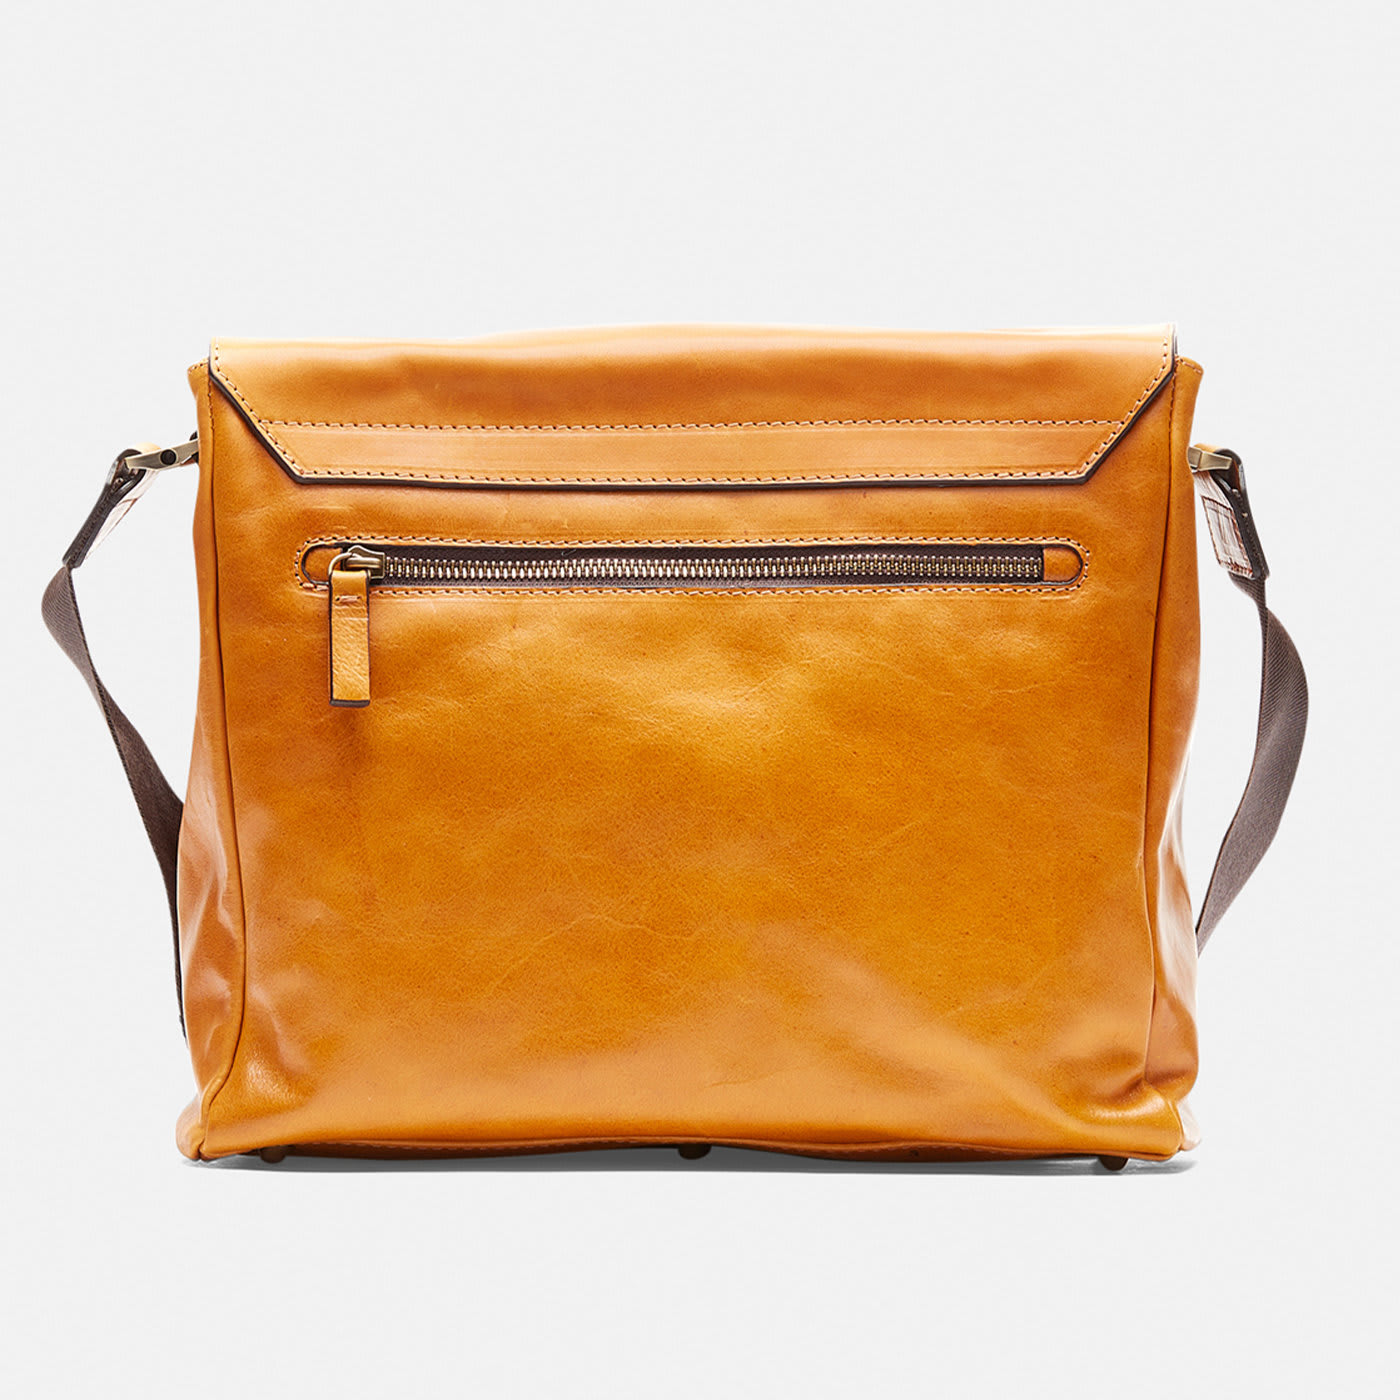 Warm and Color Orange Messenger Bag - Cuoieria Fiorentina